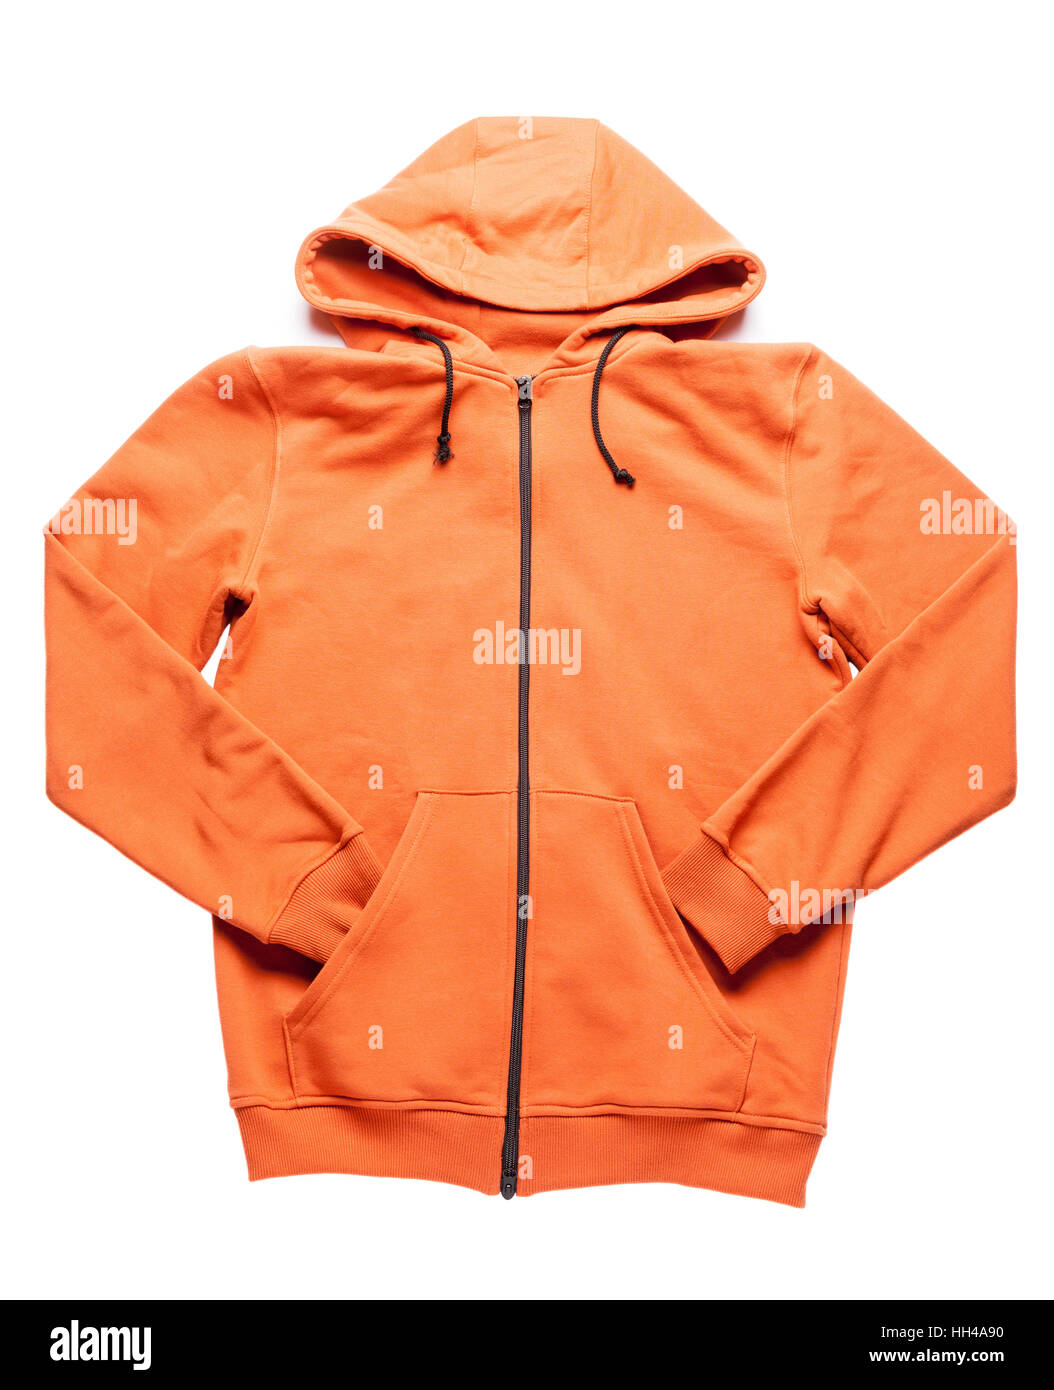 orange hoodie isolated on white background Stock Photo